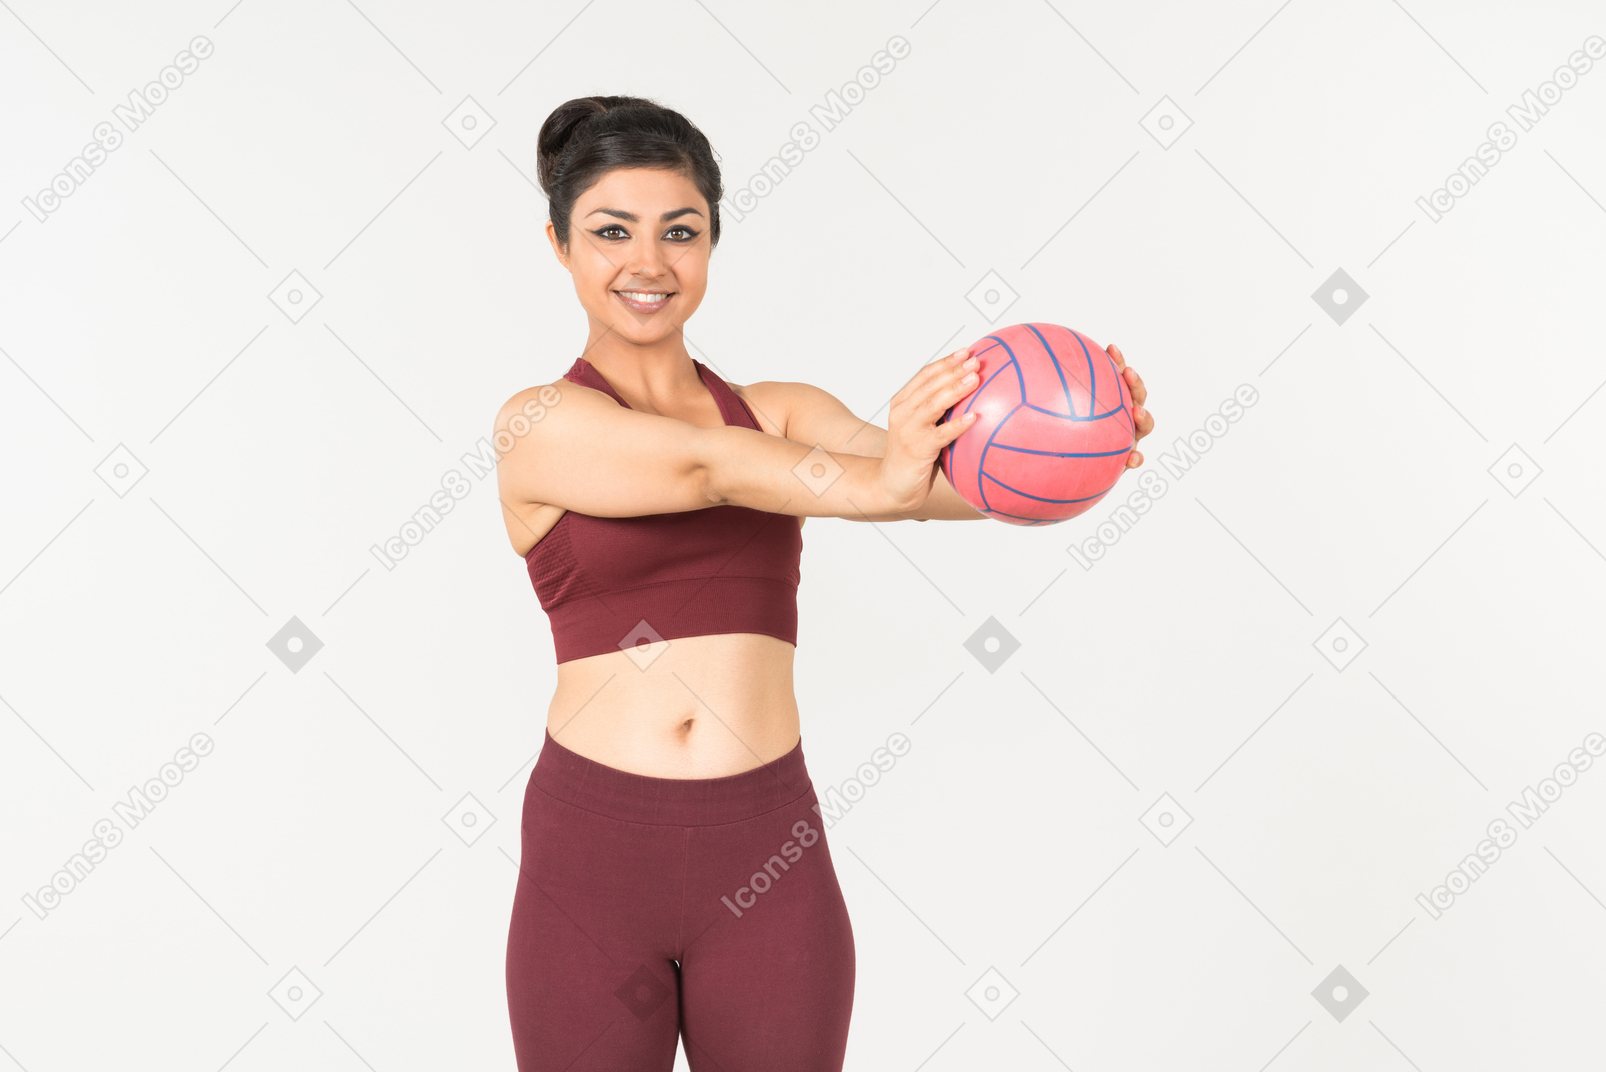 Junge indische frau in sporstwear holding ball